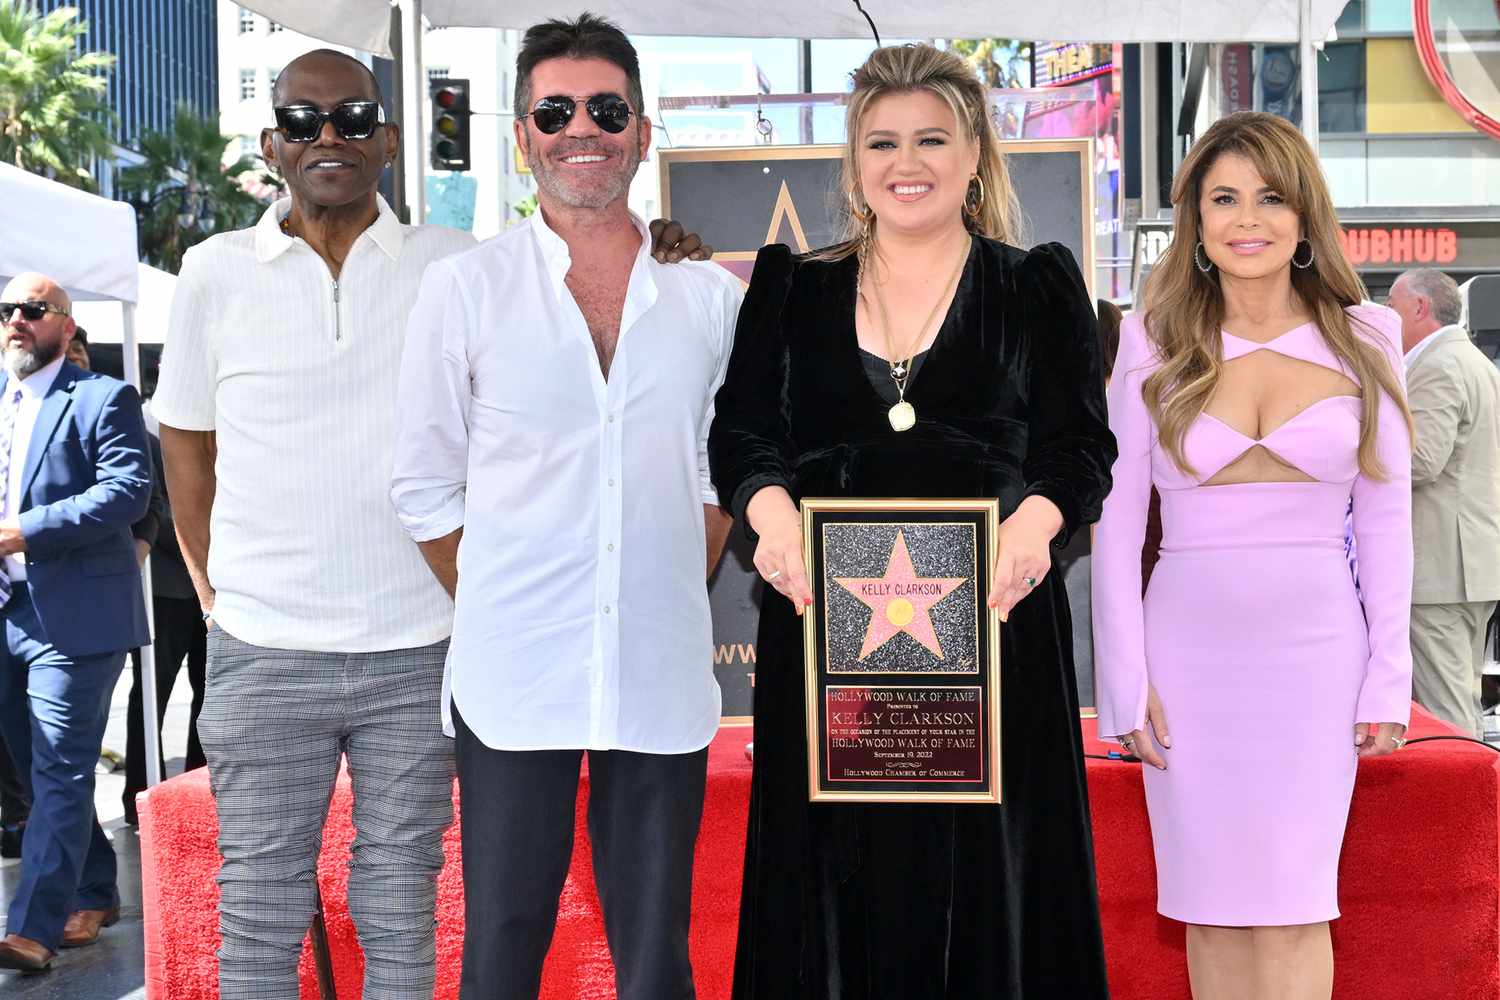 Randy Jackson, Simon Cowell, Kelly Clarkson, and Paula Abdul on the Hollywood Walk of Fame